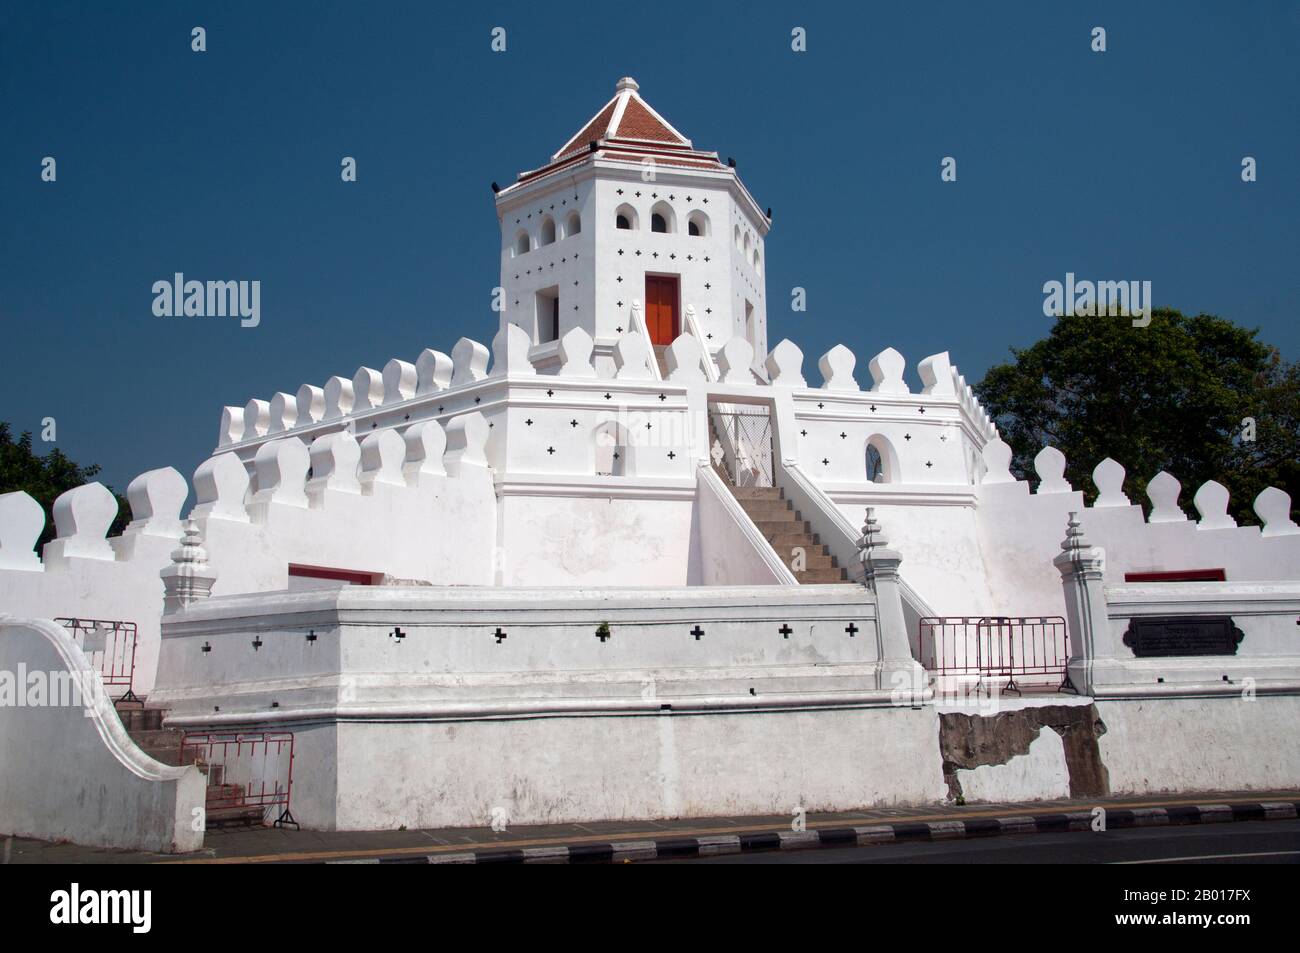 Thailandia: Forte Phra Sumen, Bangkok. Il Forte di Phra Sumen fu costruito nel 1783 durante il regno del re Buddha Yodfa Chulaloke (Rama i). È uno dei 14 forti che ha usato proteggere Bangkok. Oggi solo due sopravvivono, Phra Sumen Fort e Fort Mahakan. Foto Stock